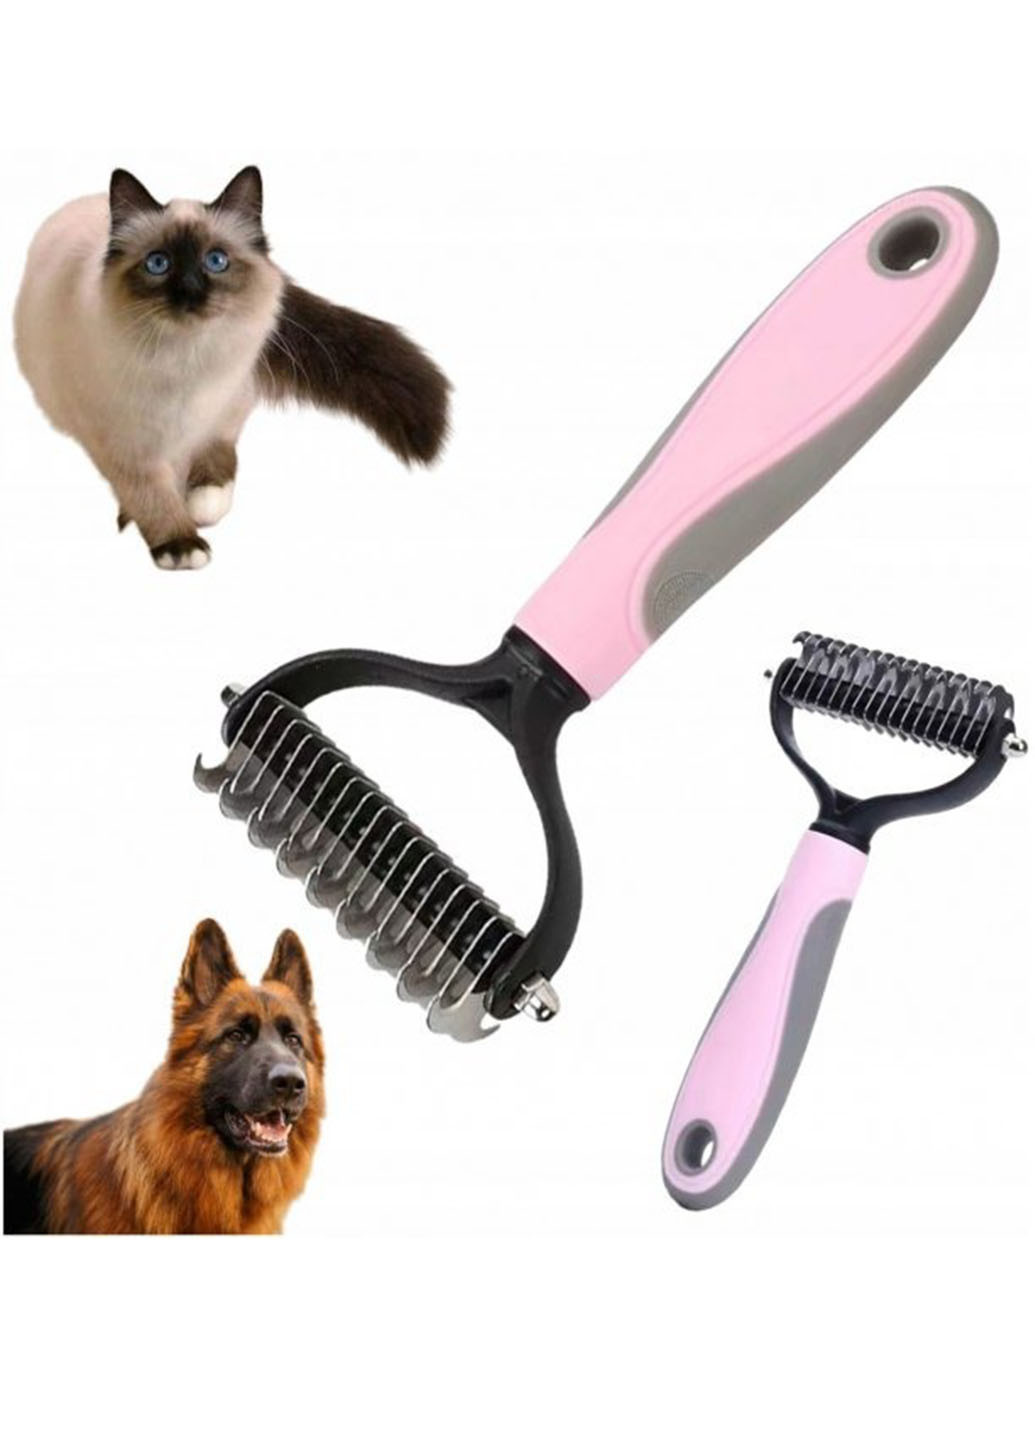 Двусторонняя щетка - расческа для животных Pet Knot Comb для вычесывания шерсти кошек и собак колтунорез Good Idea (272149204)